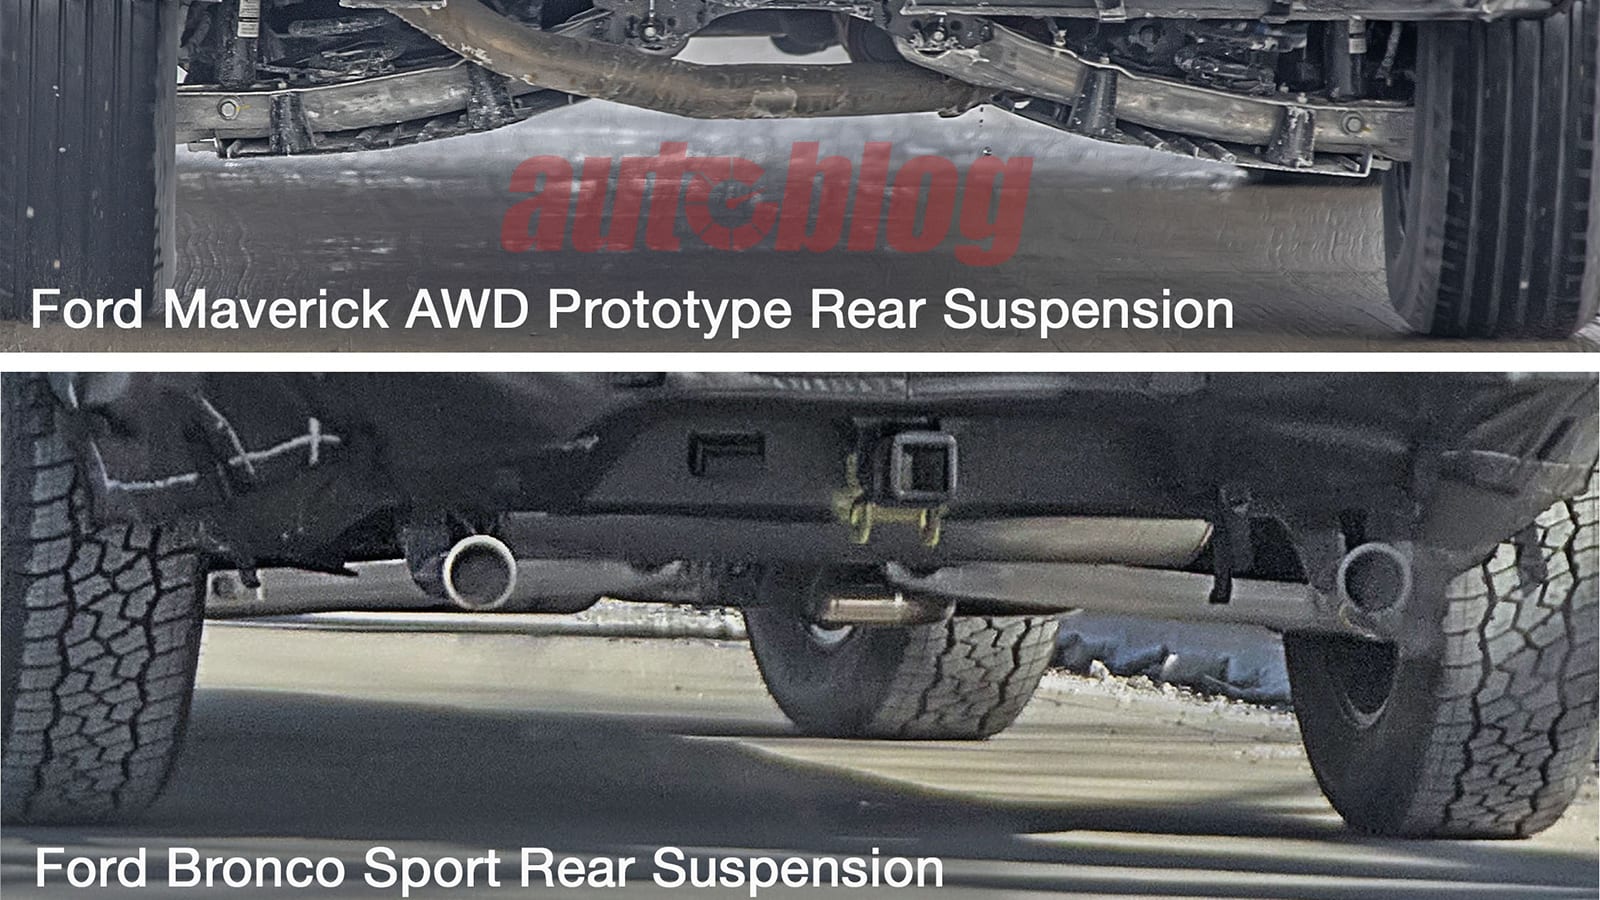 Ford Maverick and Bronco Sport suspension comparison